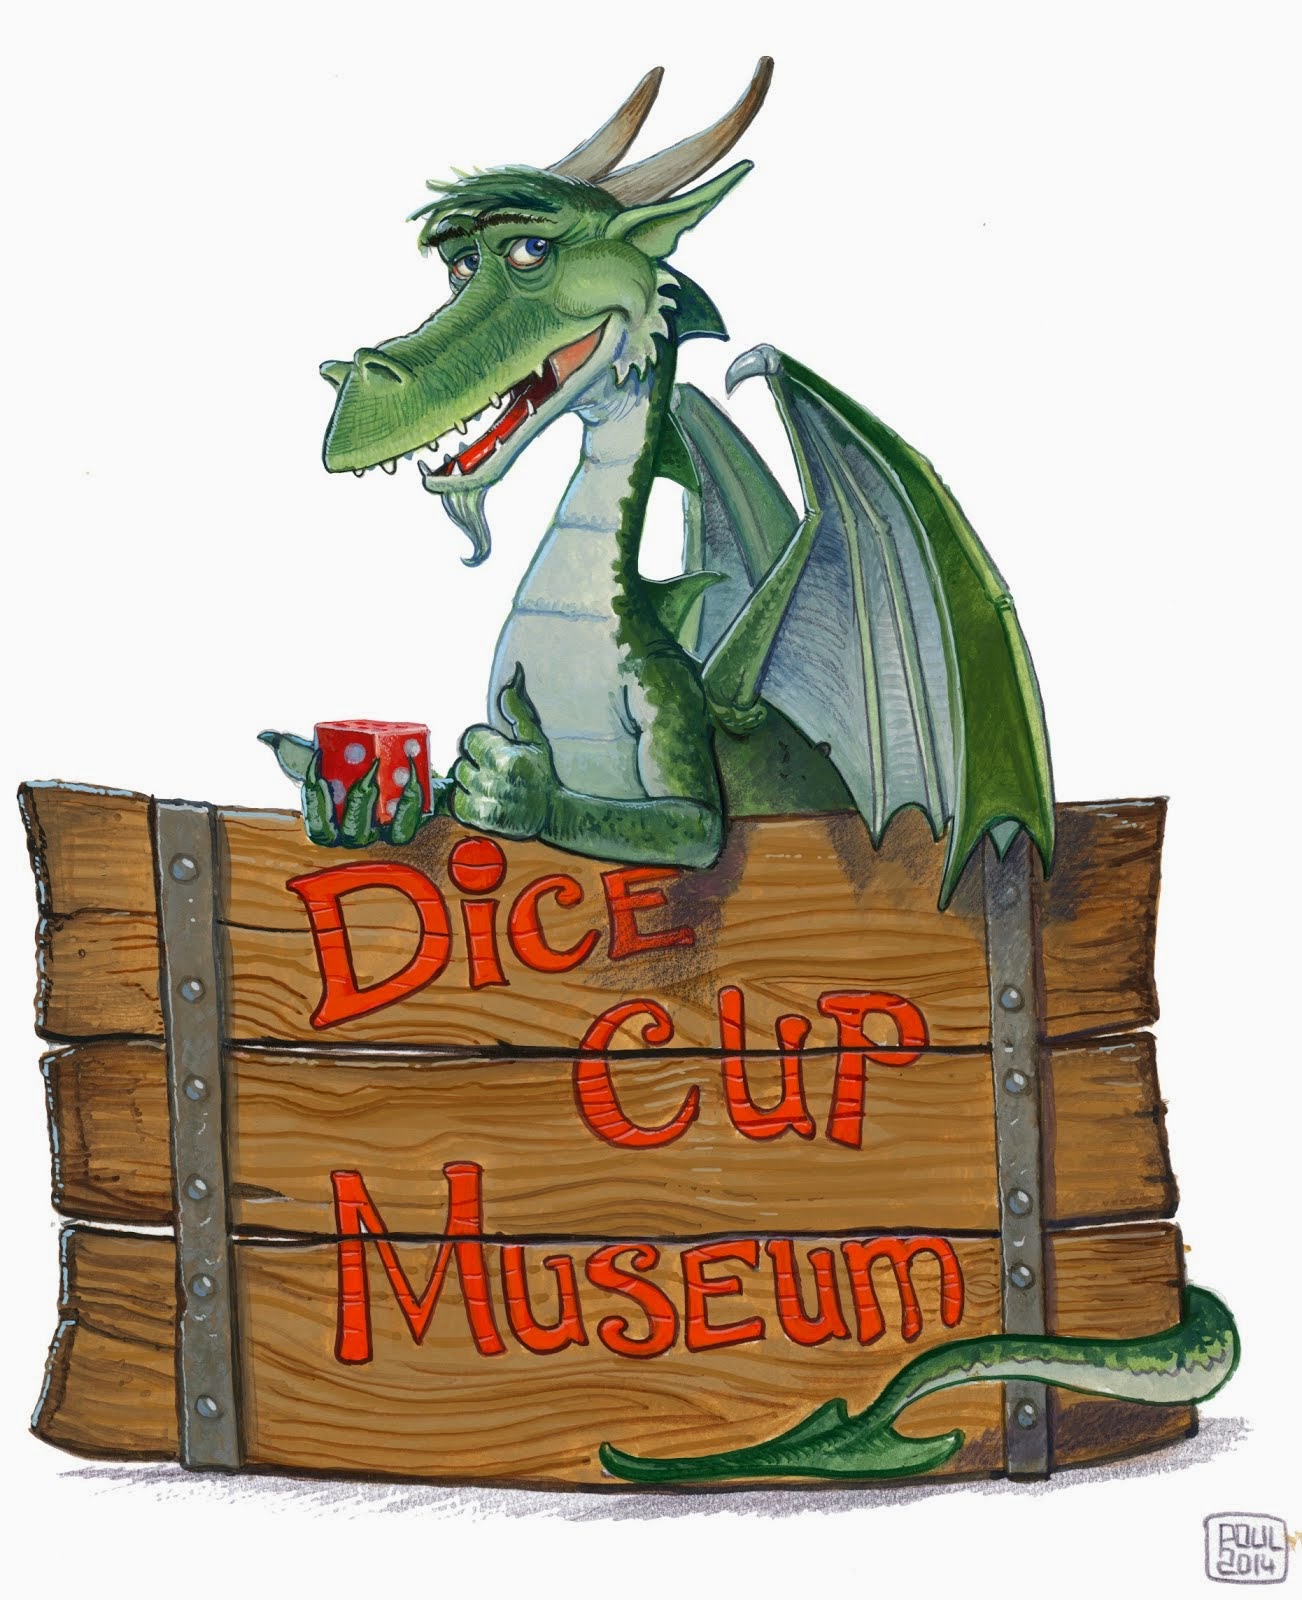 "Dice Cup Museum" auf facebook: